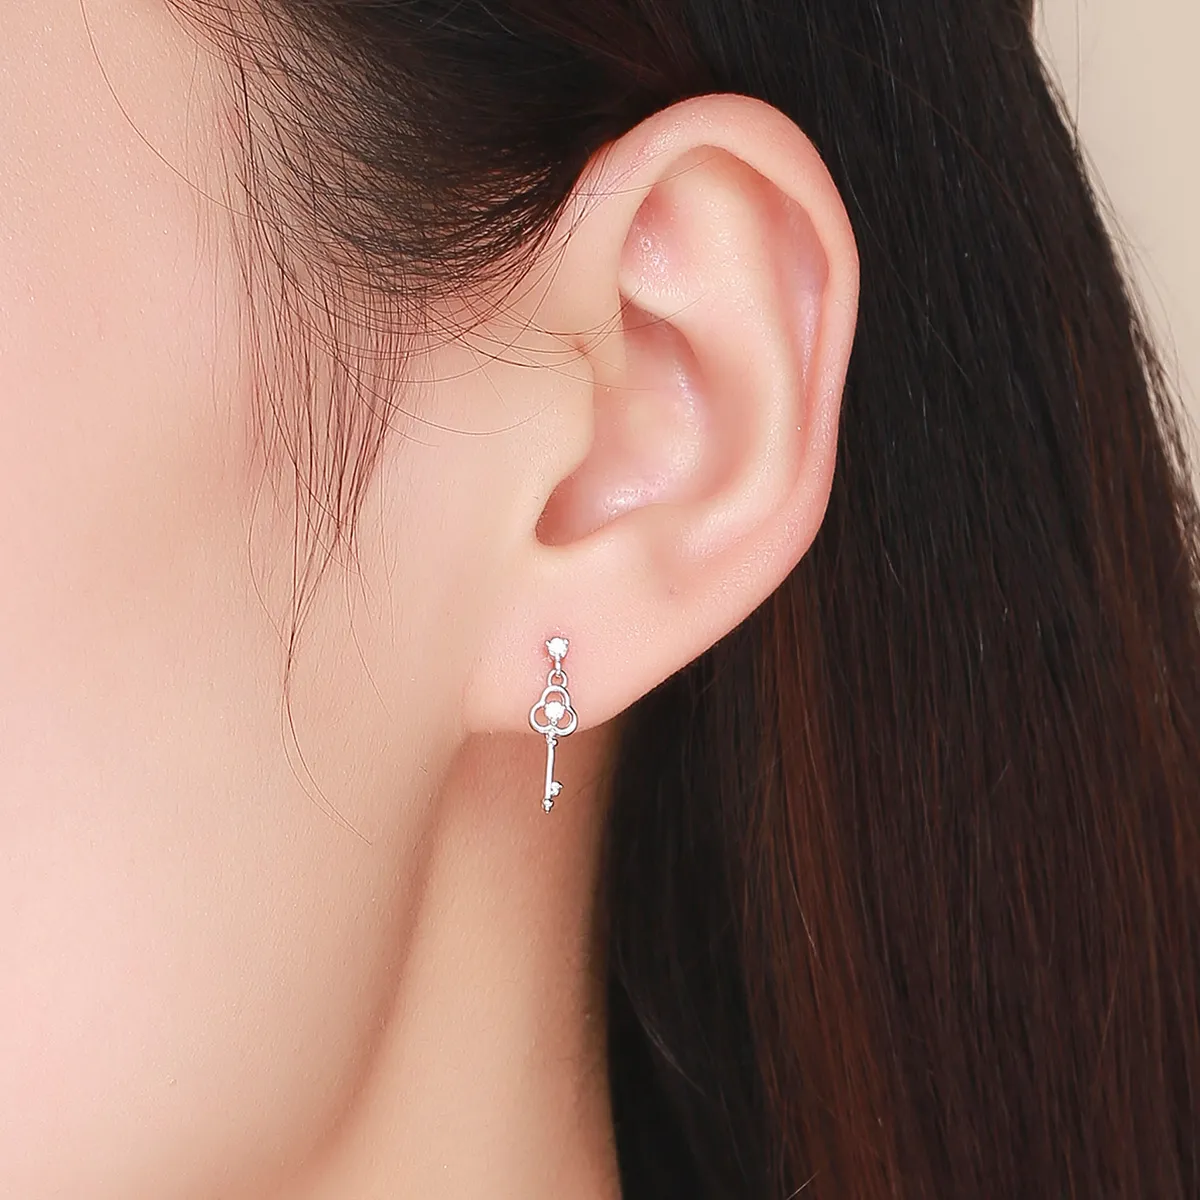 Pandora Style Silver Key of Heart Hanging Earrings - SCE539